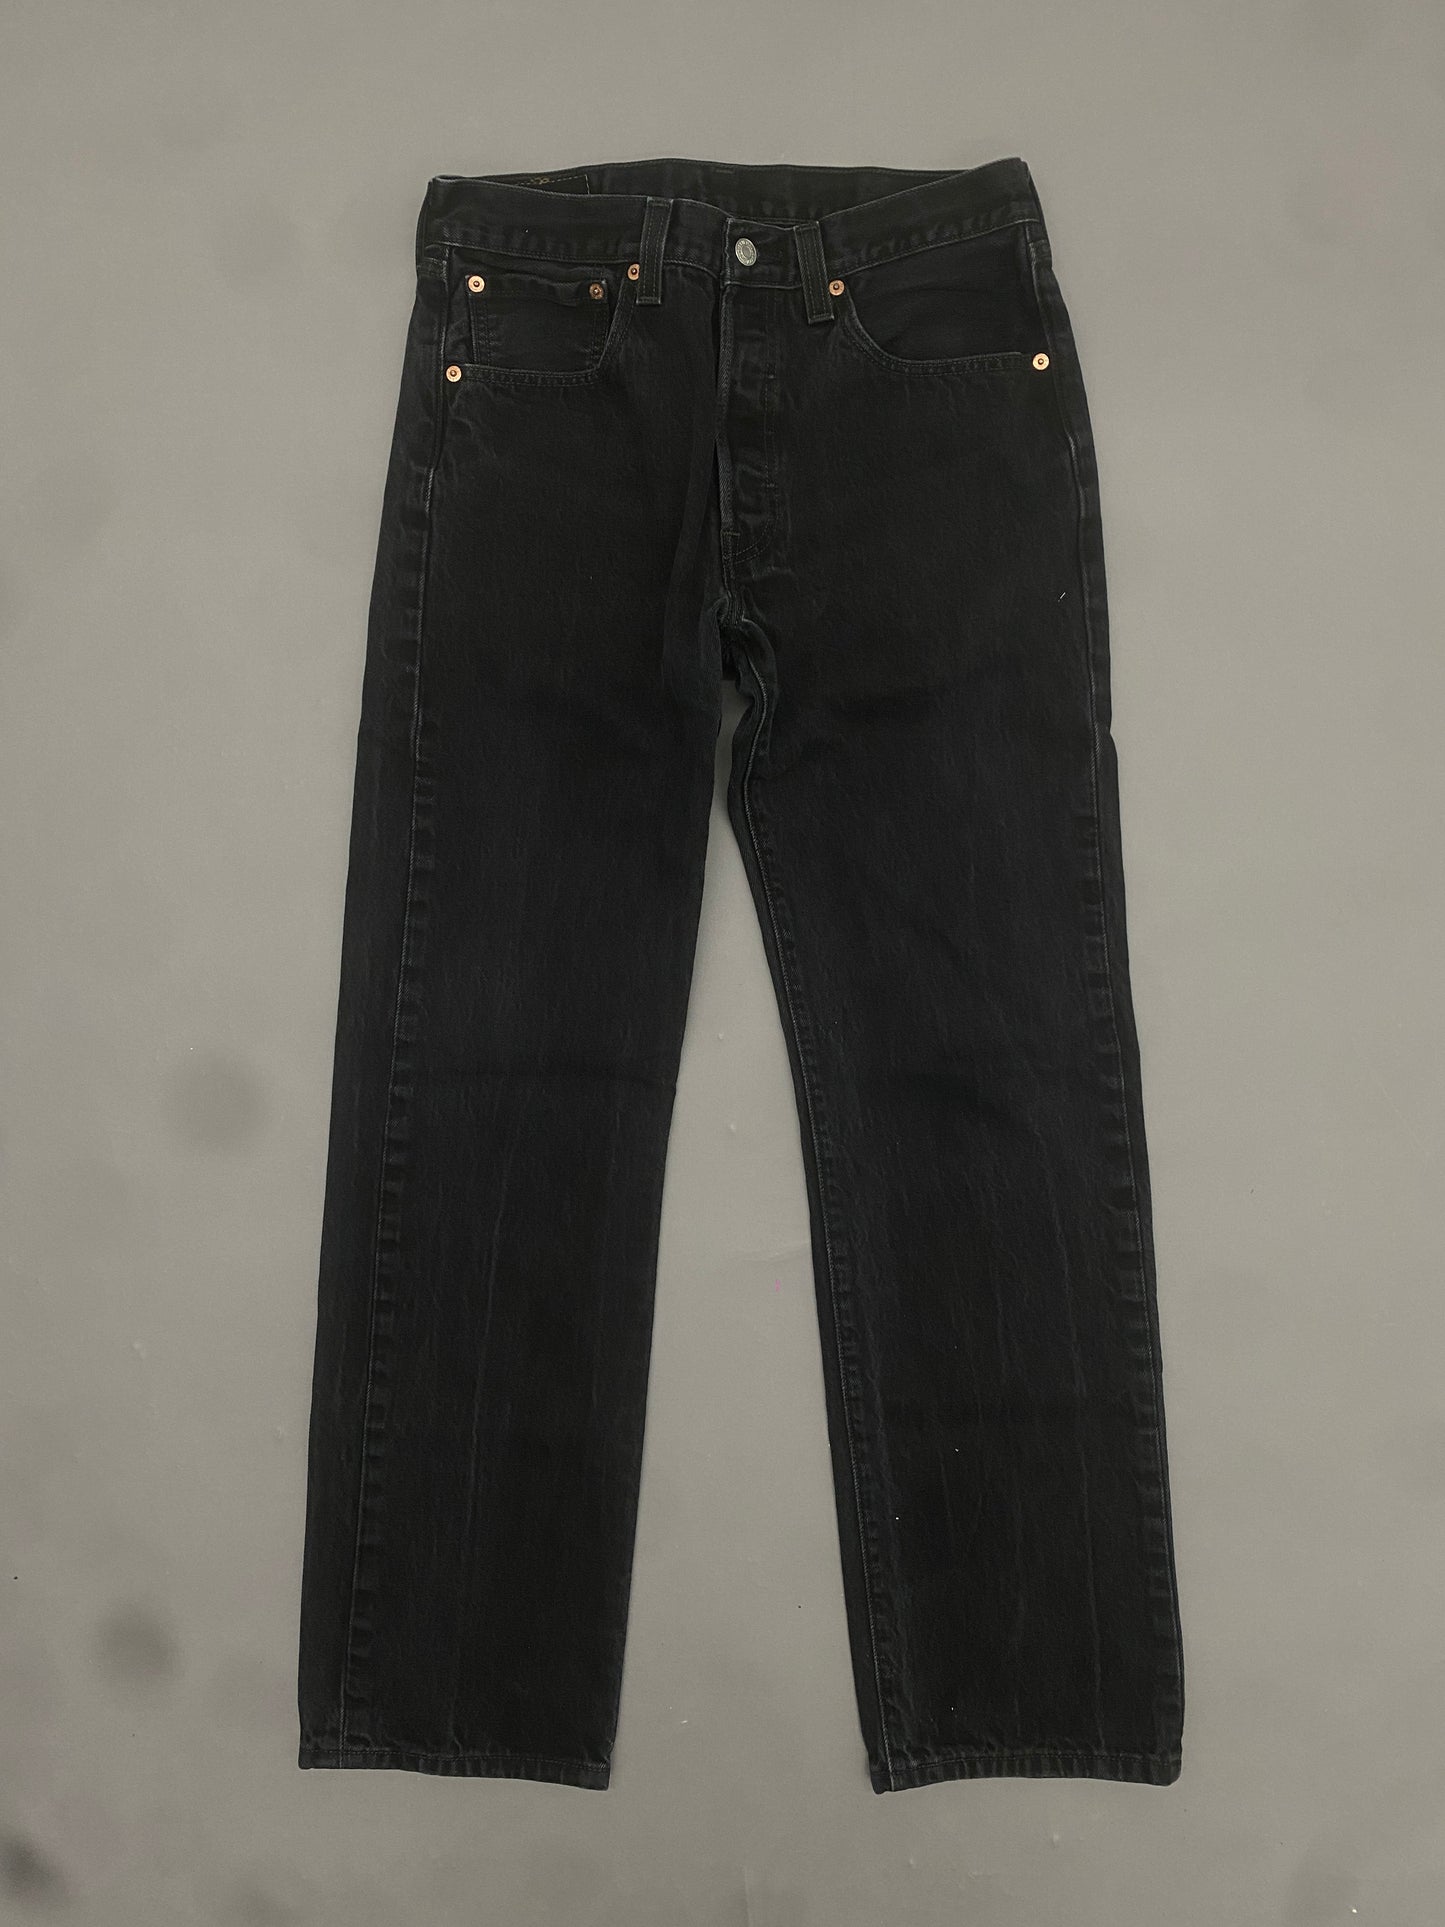 Levis 501 Vintage Jeans - 32 x 32